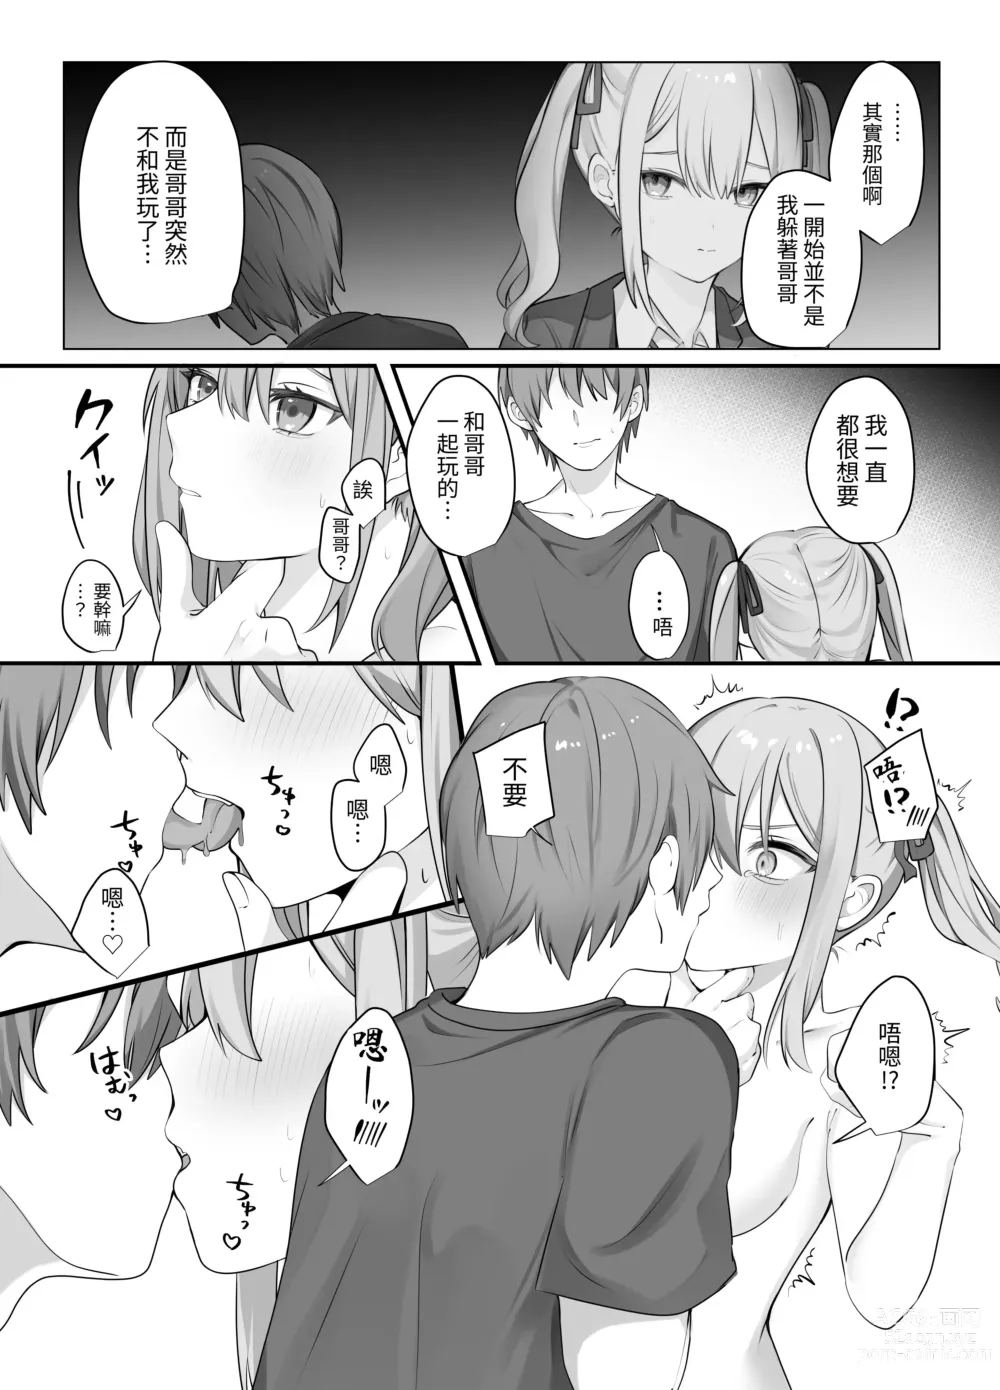 Page 29 of doujinshi Sex Shinai to Derarenai Heya ni Naka no Warui Imouto to Tojikomerareru